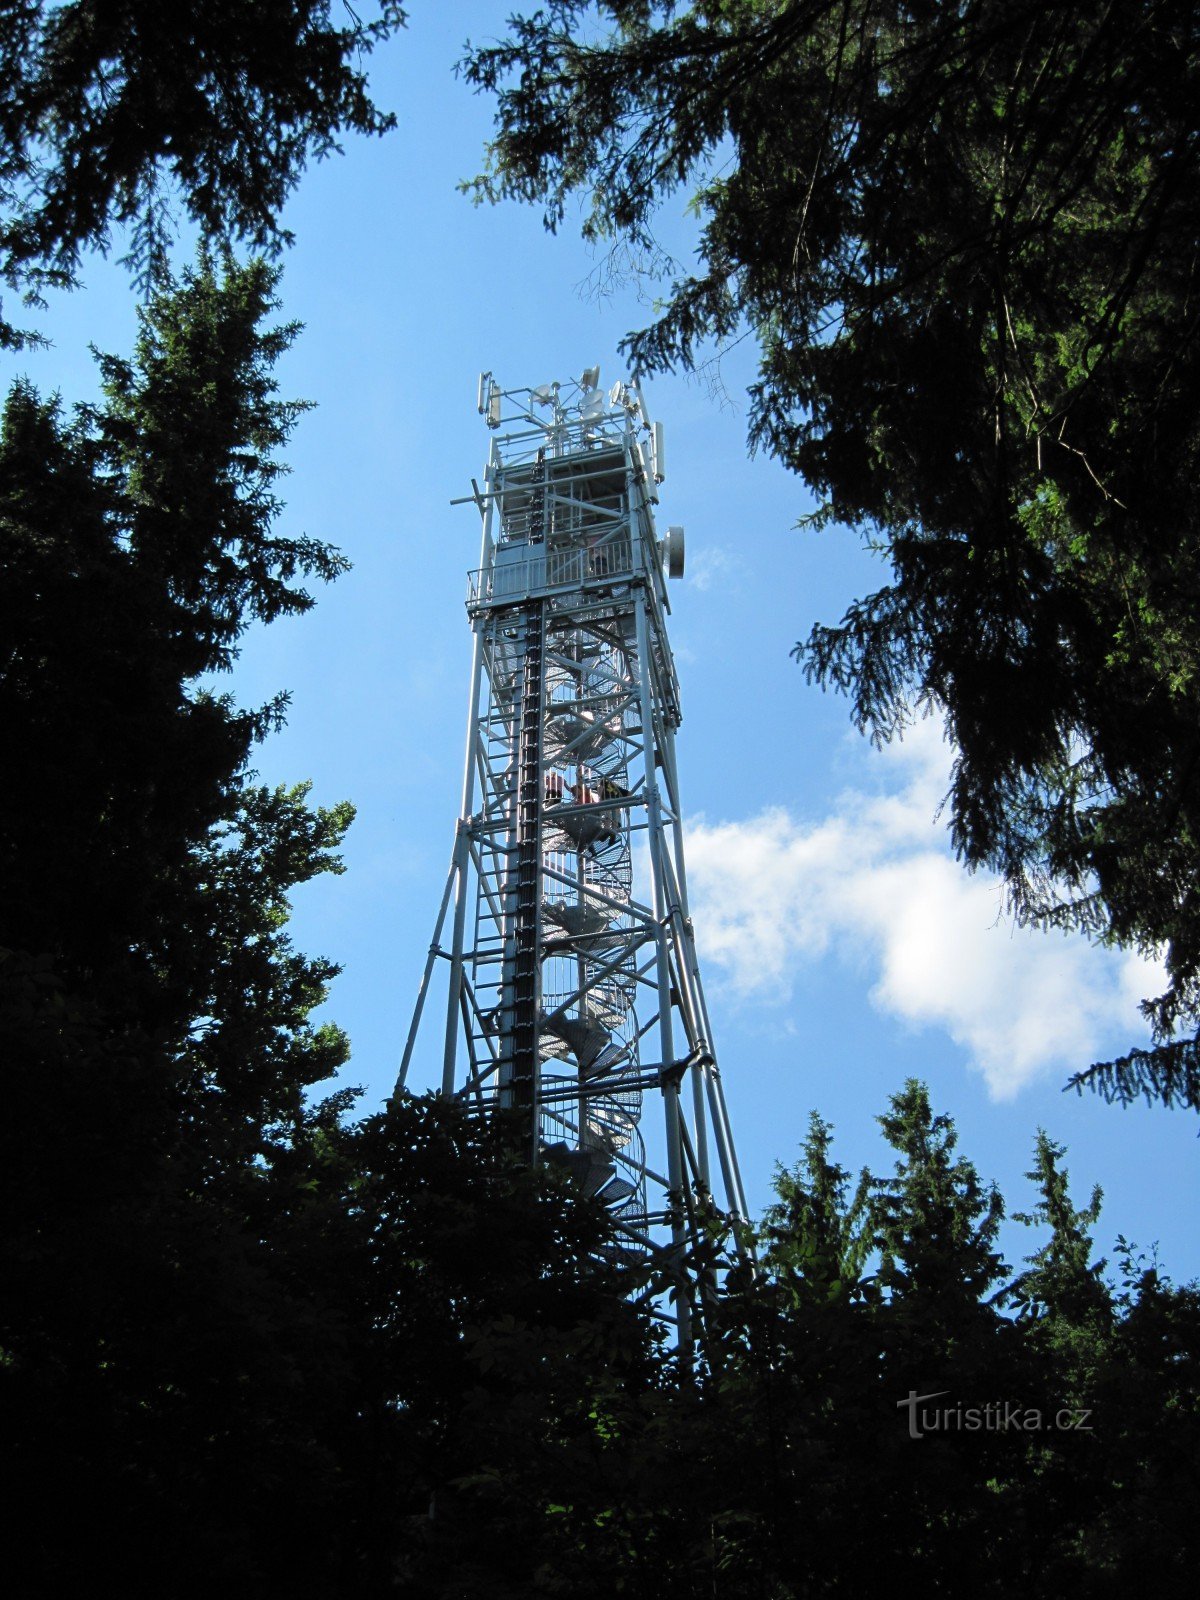 Torre de telecomunicaciones con torre de observación en Kraví hora